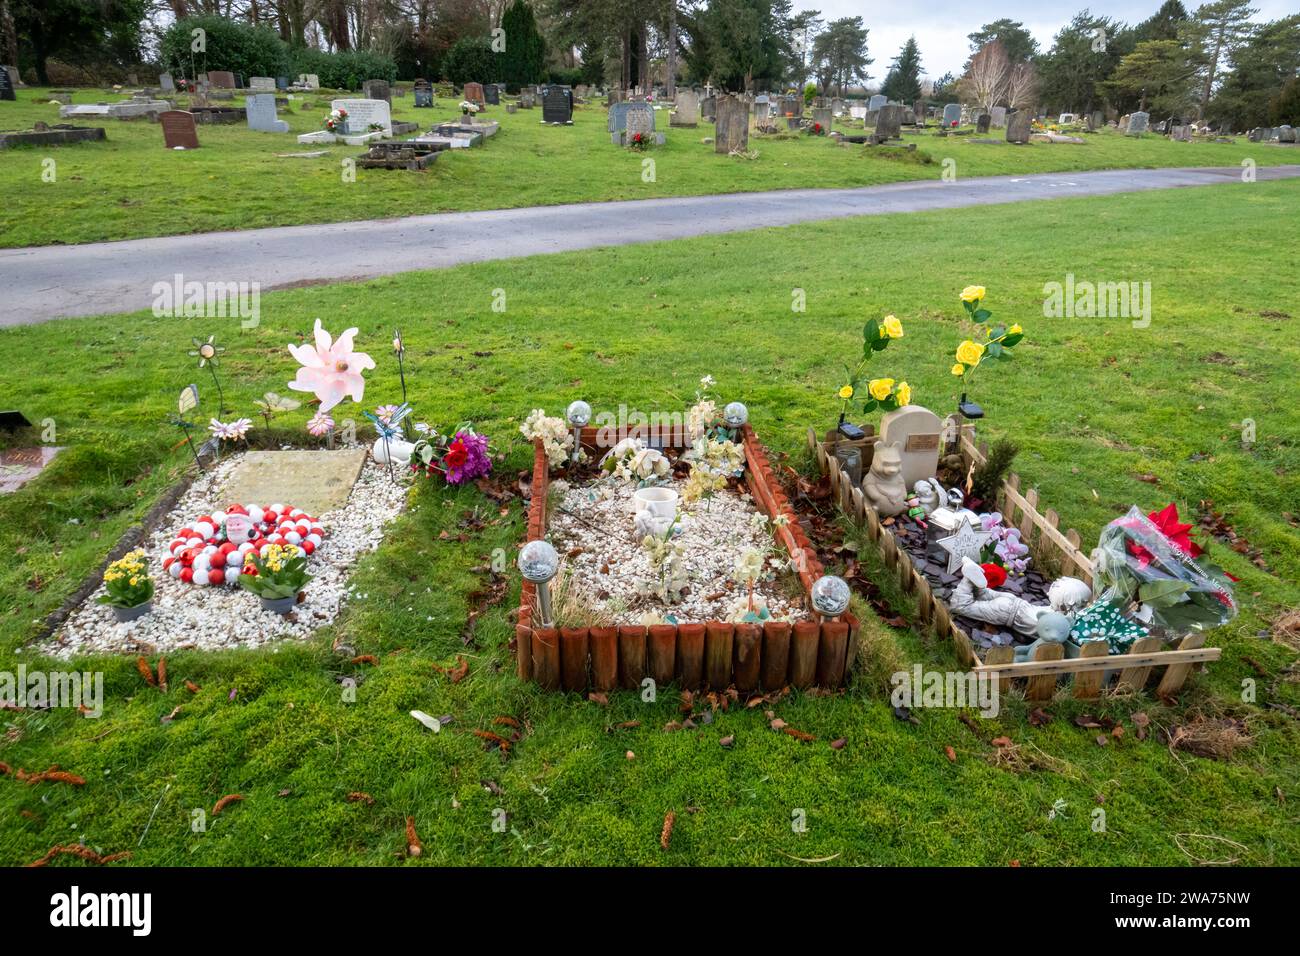 Tumbas infantiles en el cementerio Magdalen Hill, Winchester, Inglaterra, Reino Unido. Tumbas de bebés bebés bebés bebés niños pequeños con juguetes y decoraciones. Foto de stock